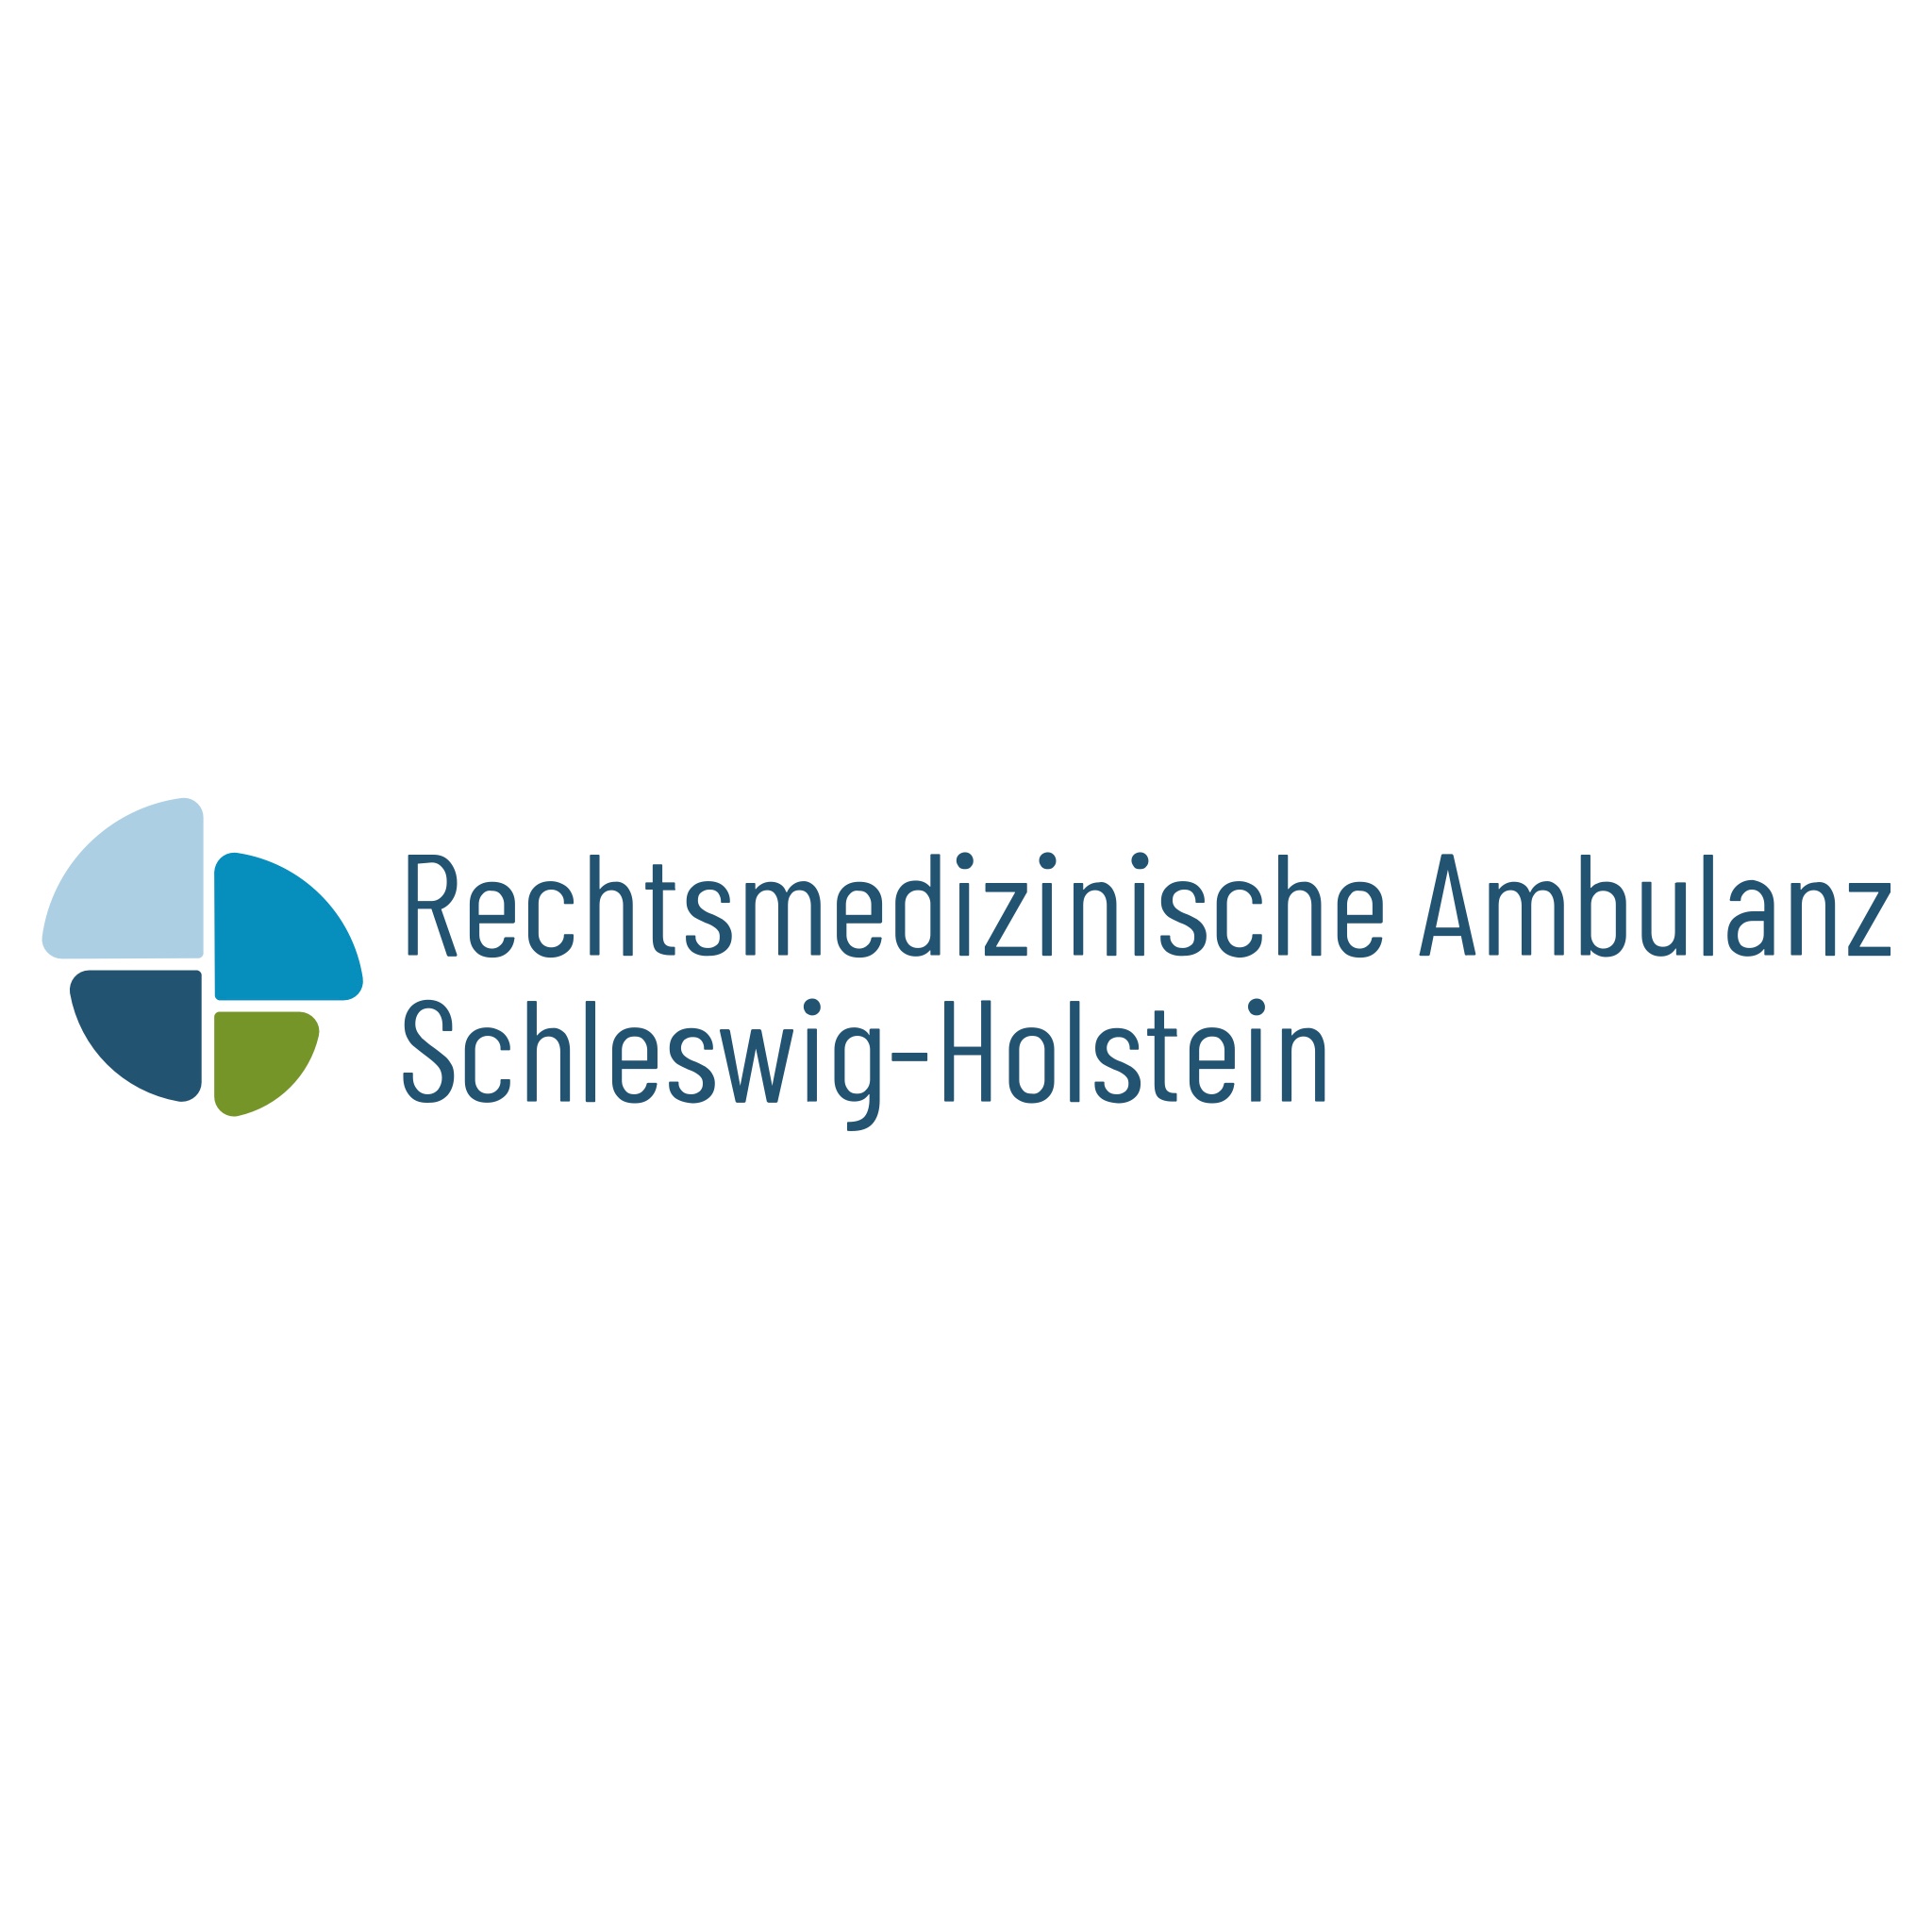 Rechtsmedizinische Ambulanz Schleswig-Holstein